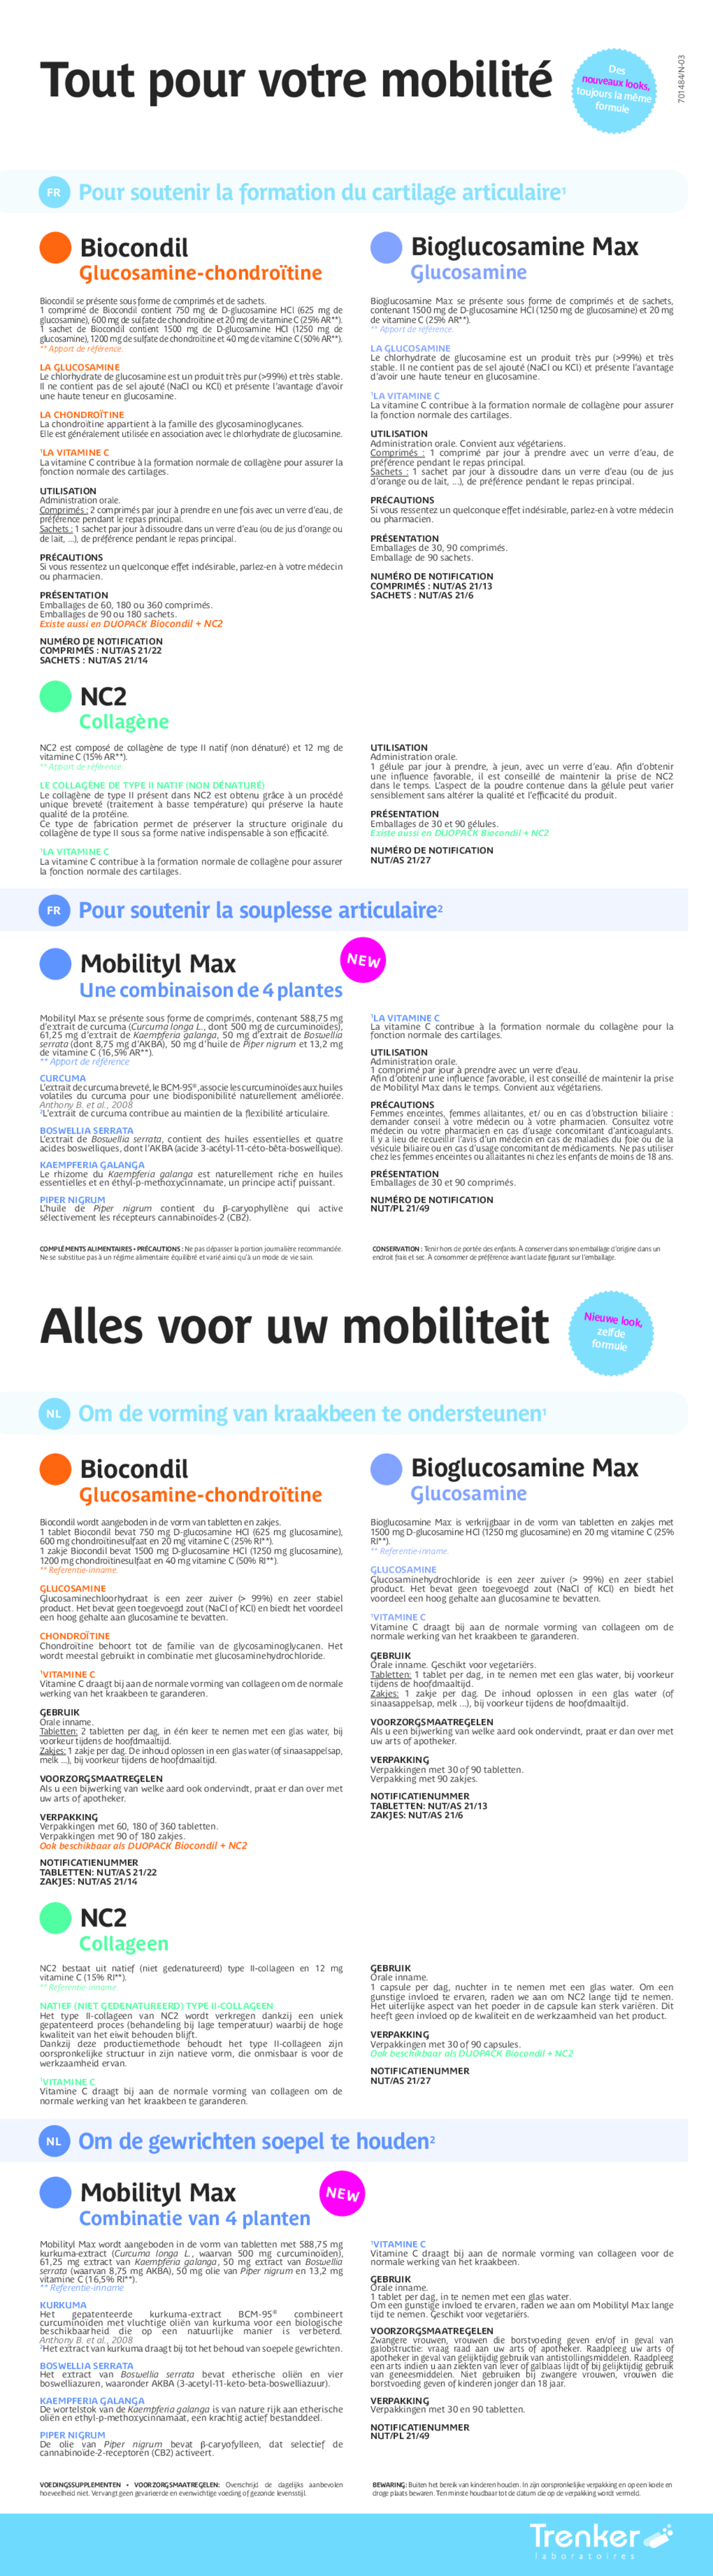 Mobilityl Max Tabletten afbeelding van document #1, gebruiksaanwijzing